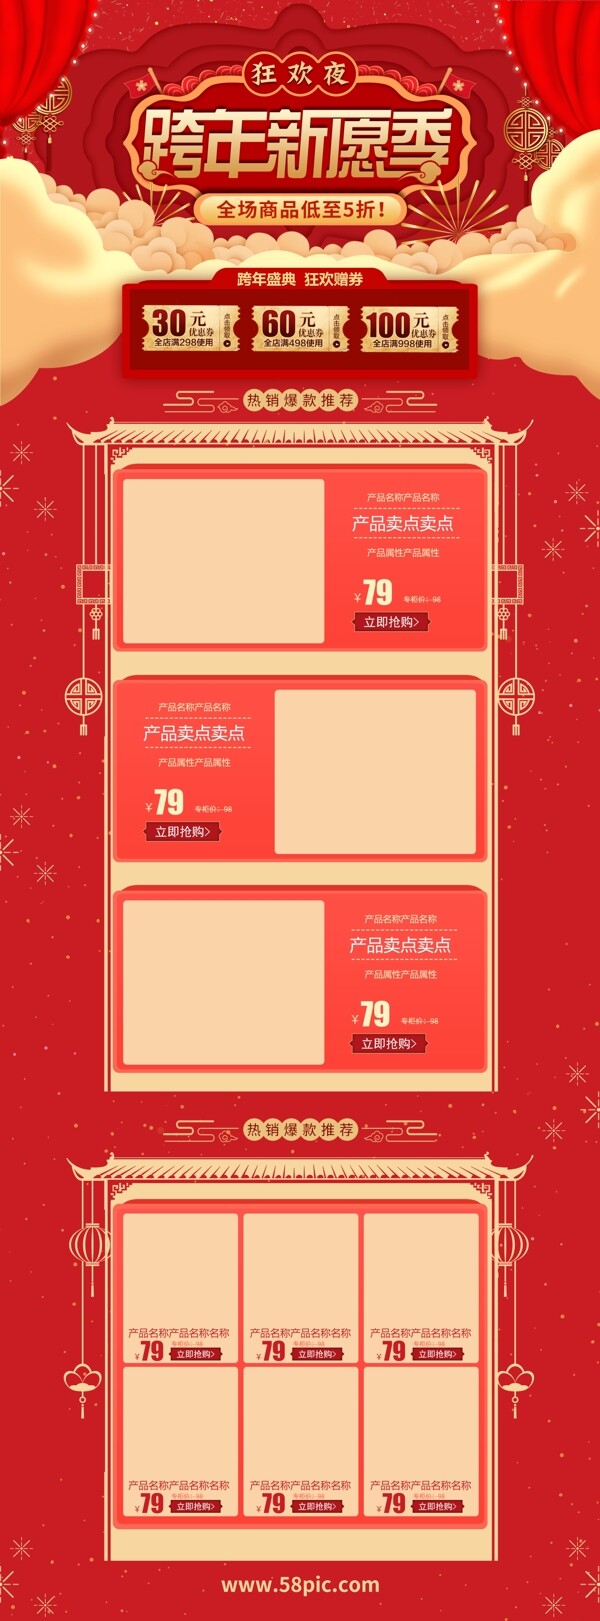 红色喜庆跨年新愿季狂欢夜电商首页促销模板